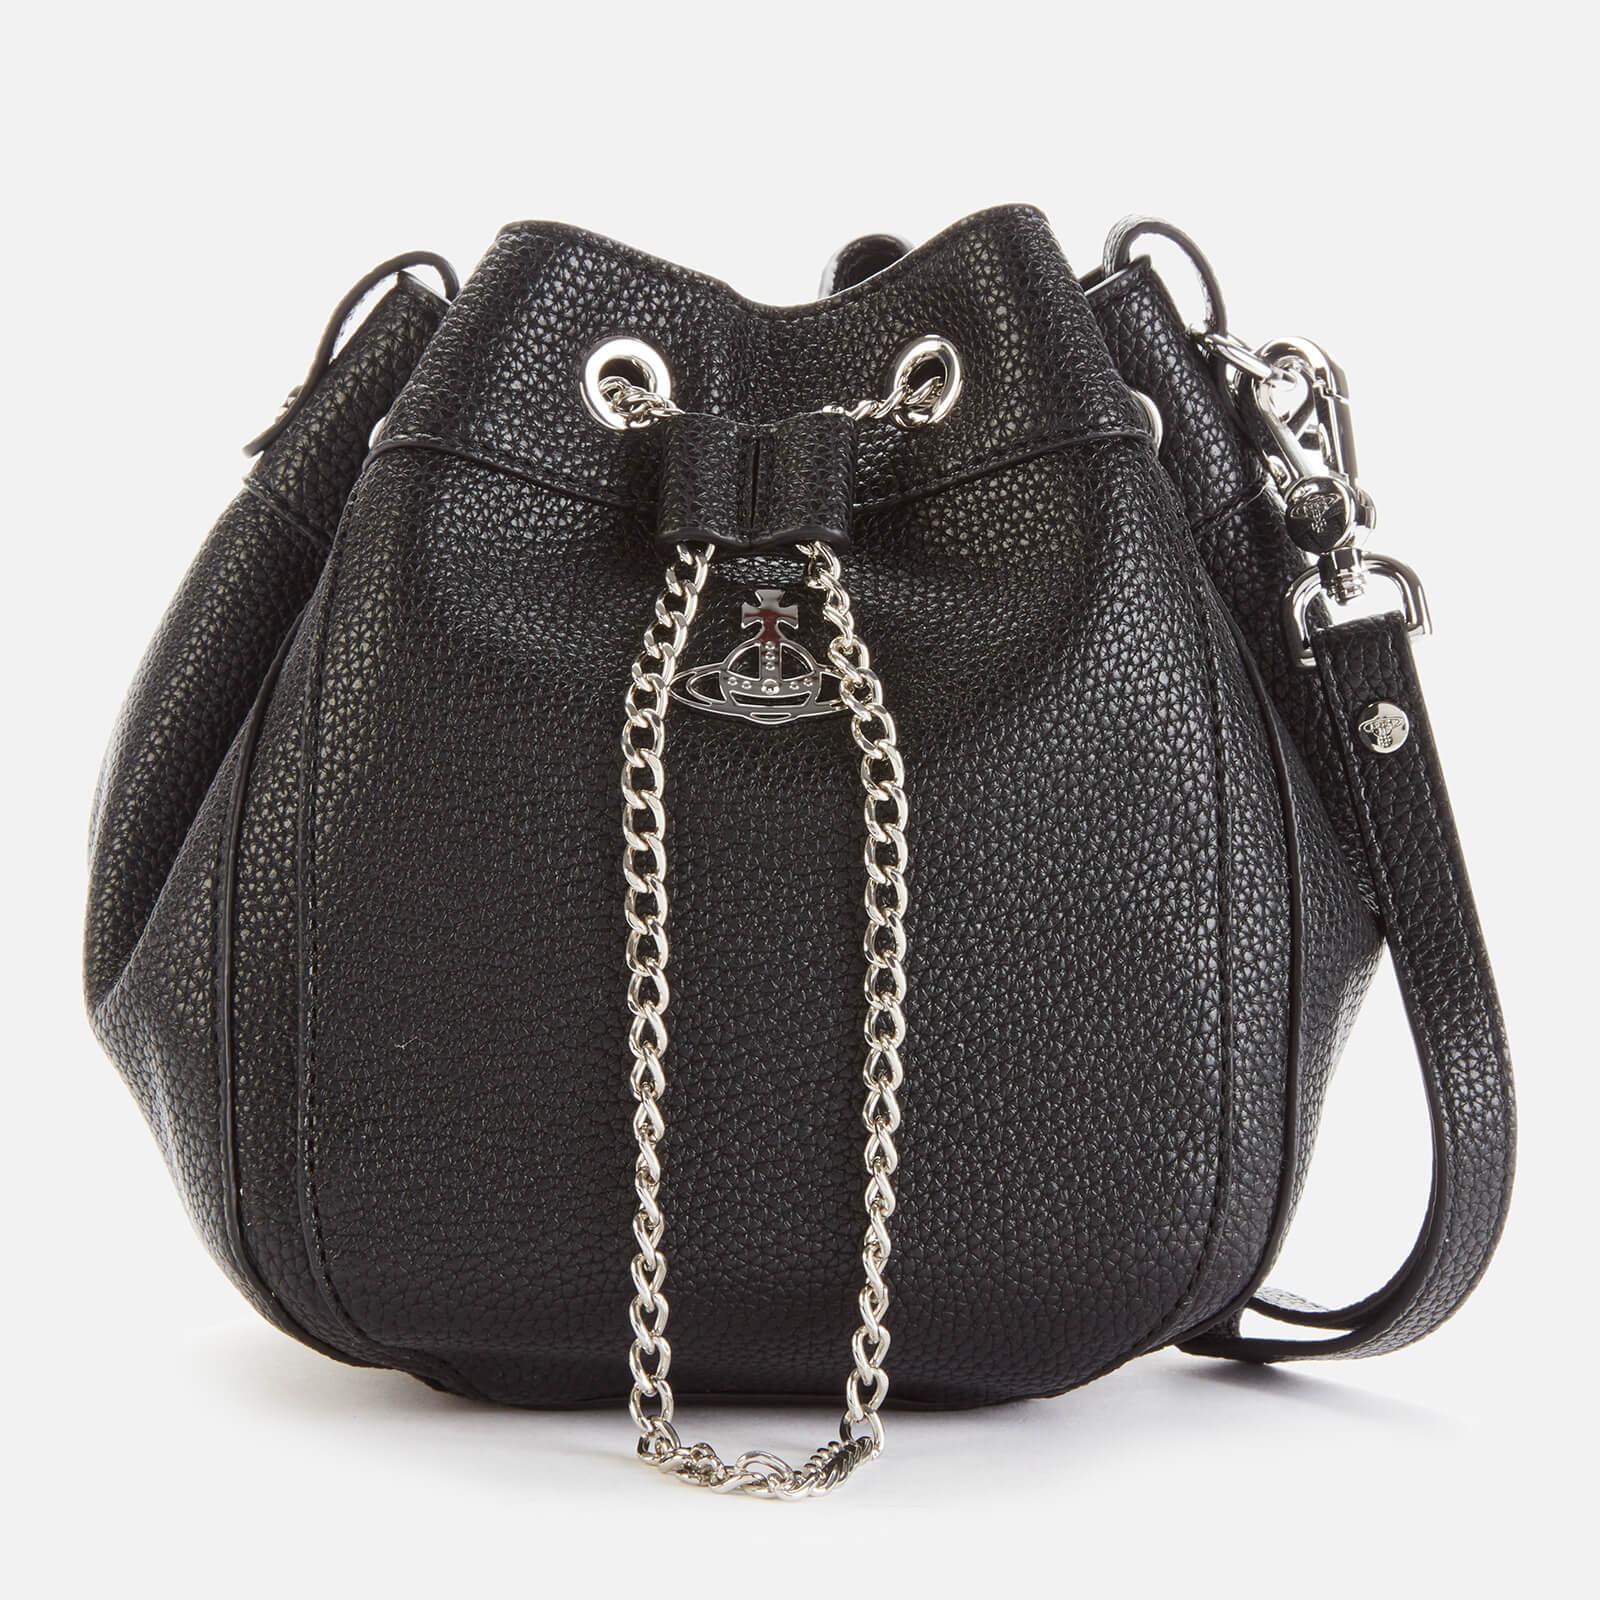 Vivienne Westwood Johanna Black Leather Bucket Bag - Lyst